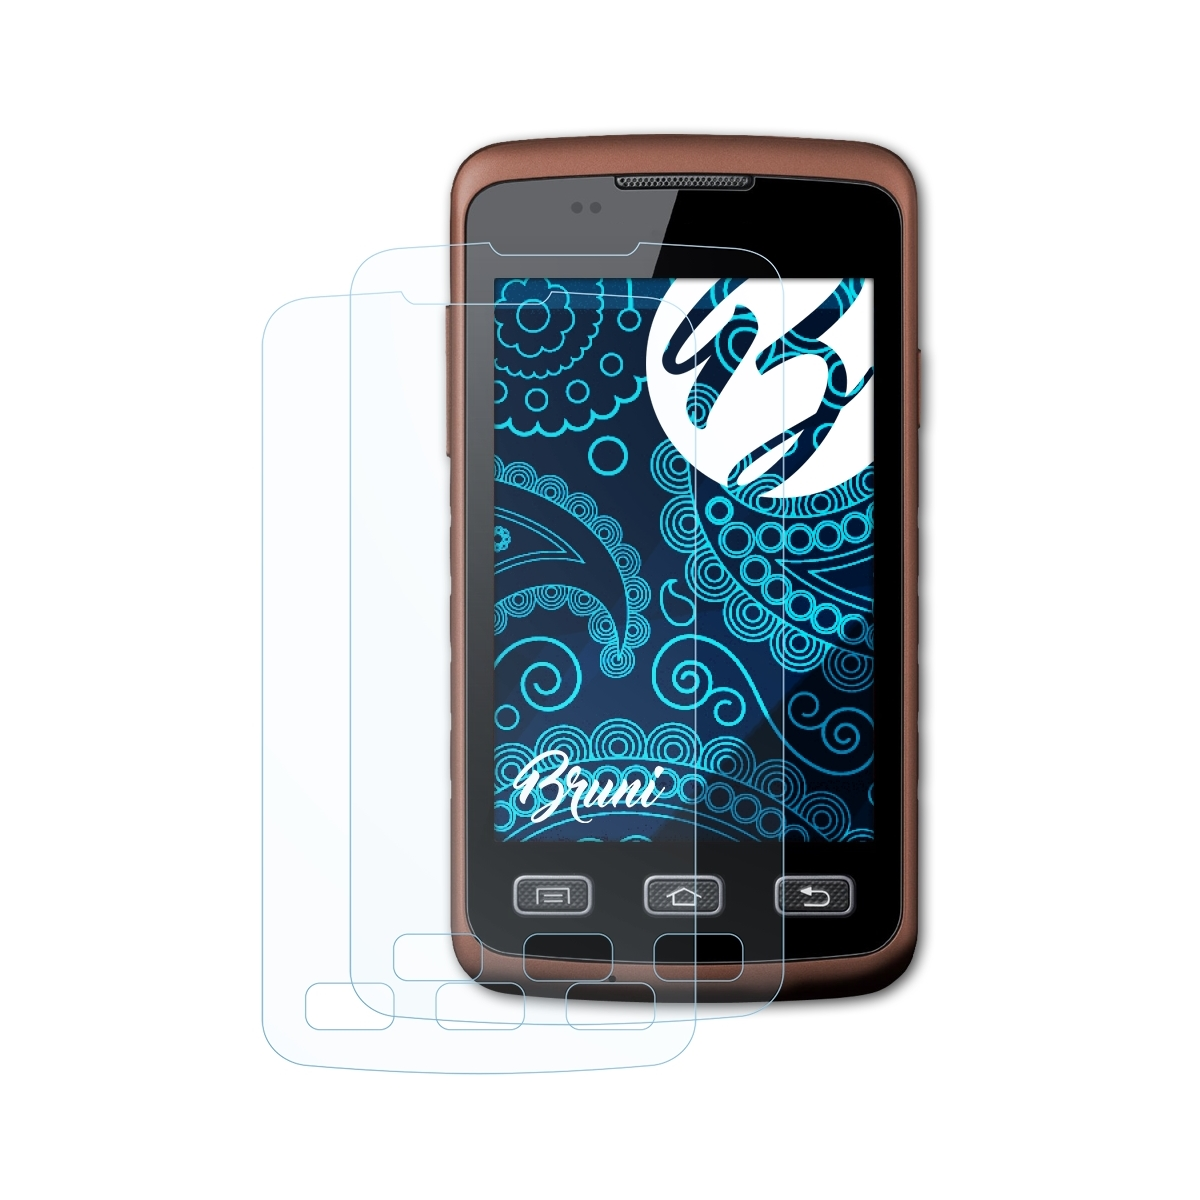 Galaxy Schutzfolie(für BRUNI 2x Samsung Basics-Clear (GT-S5690)) Xcover